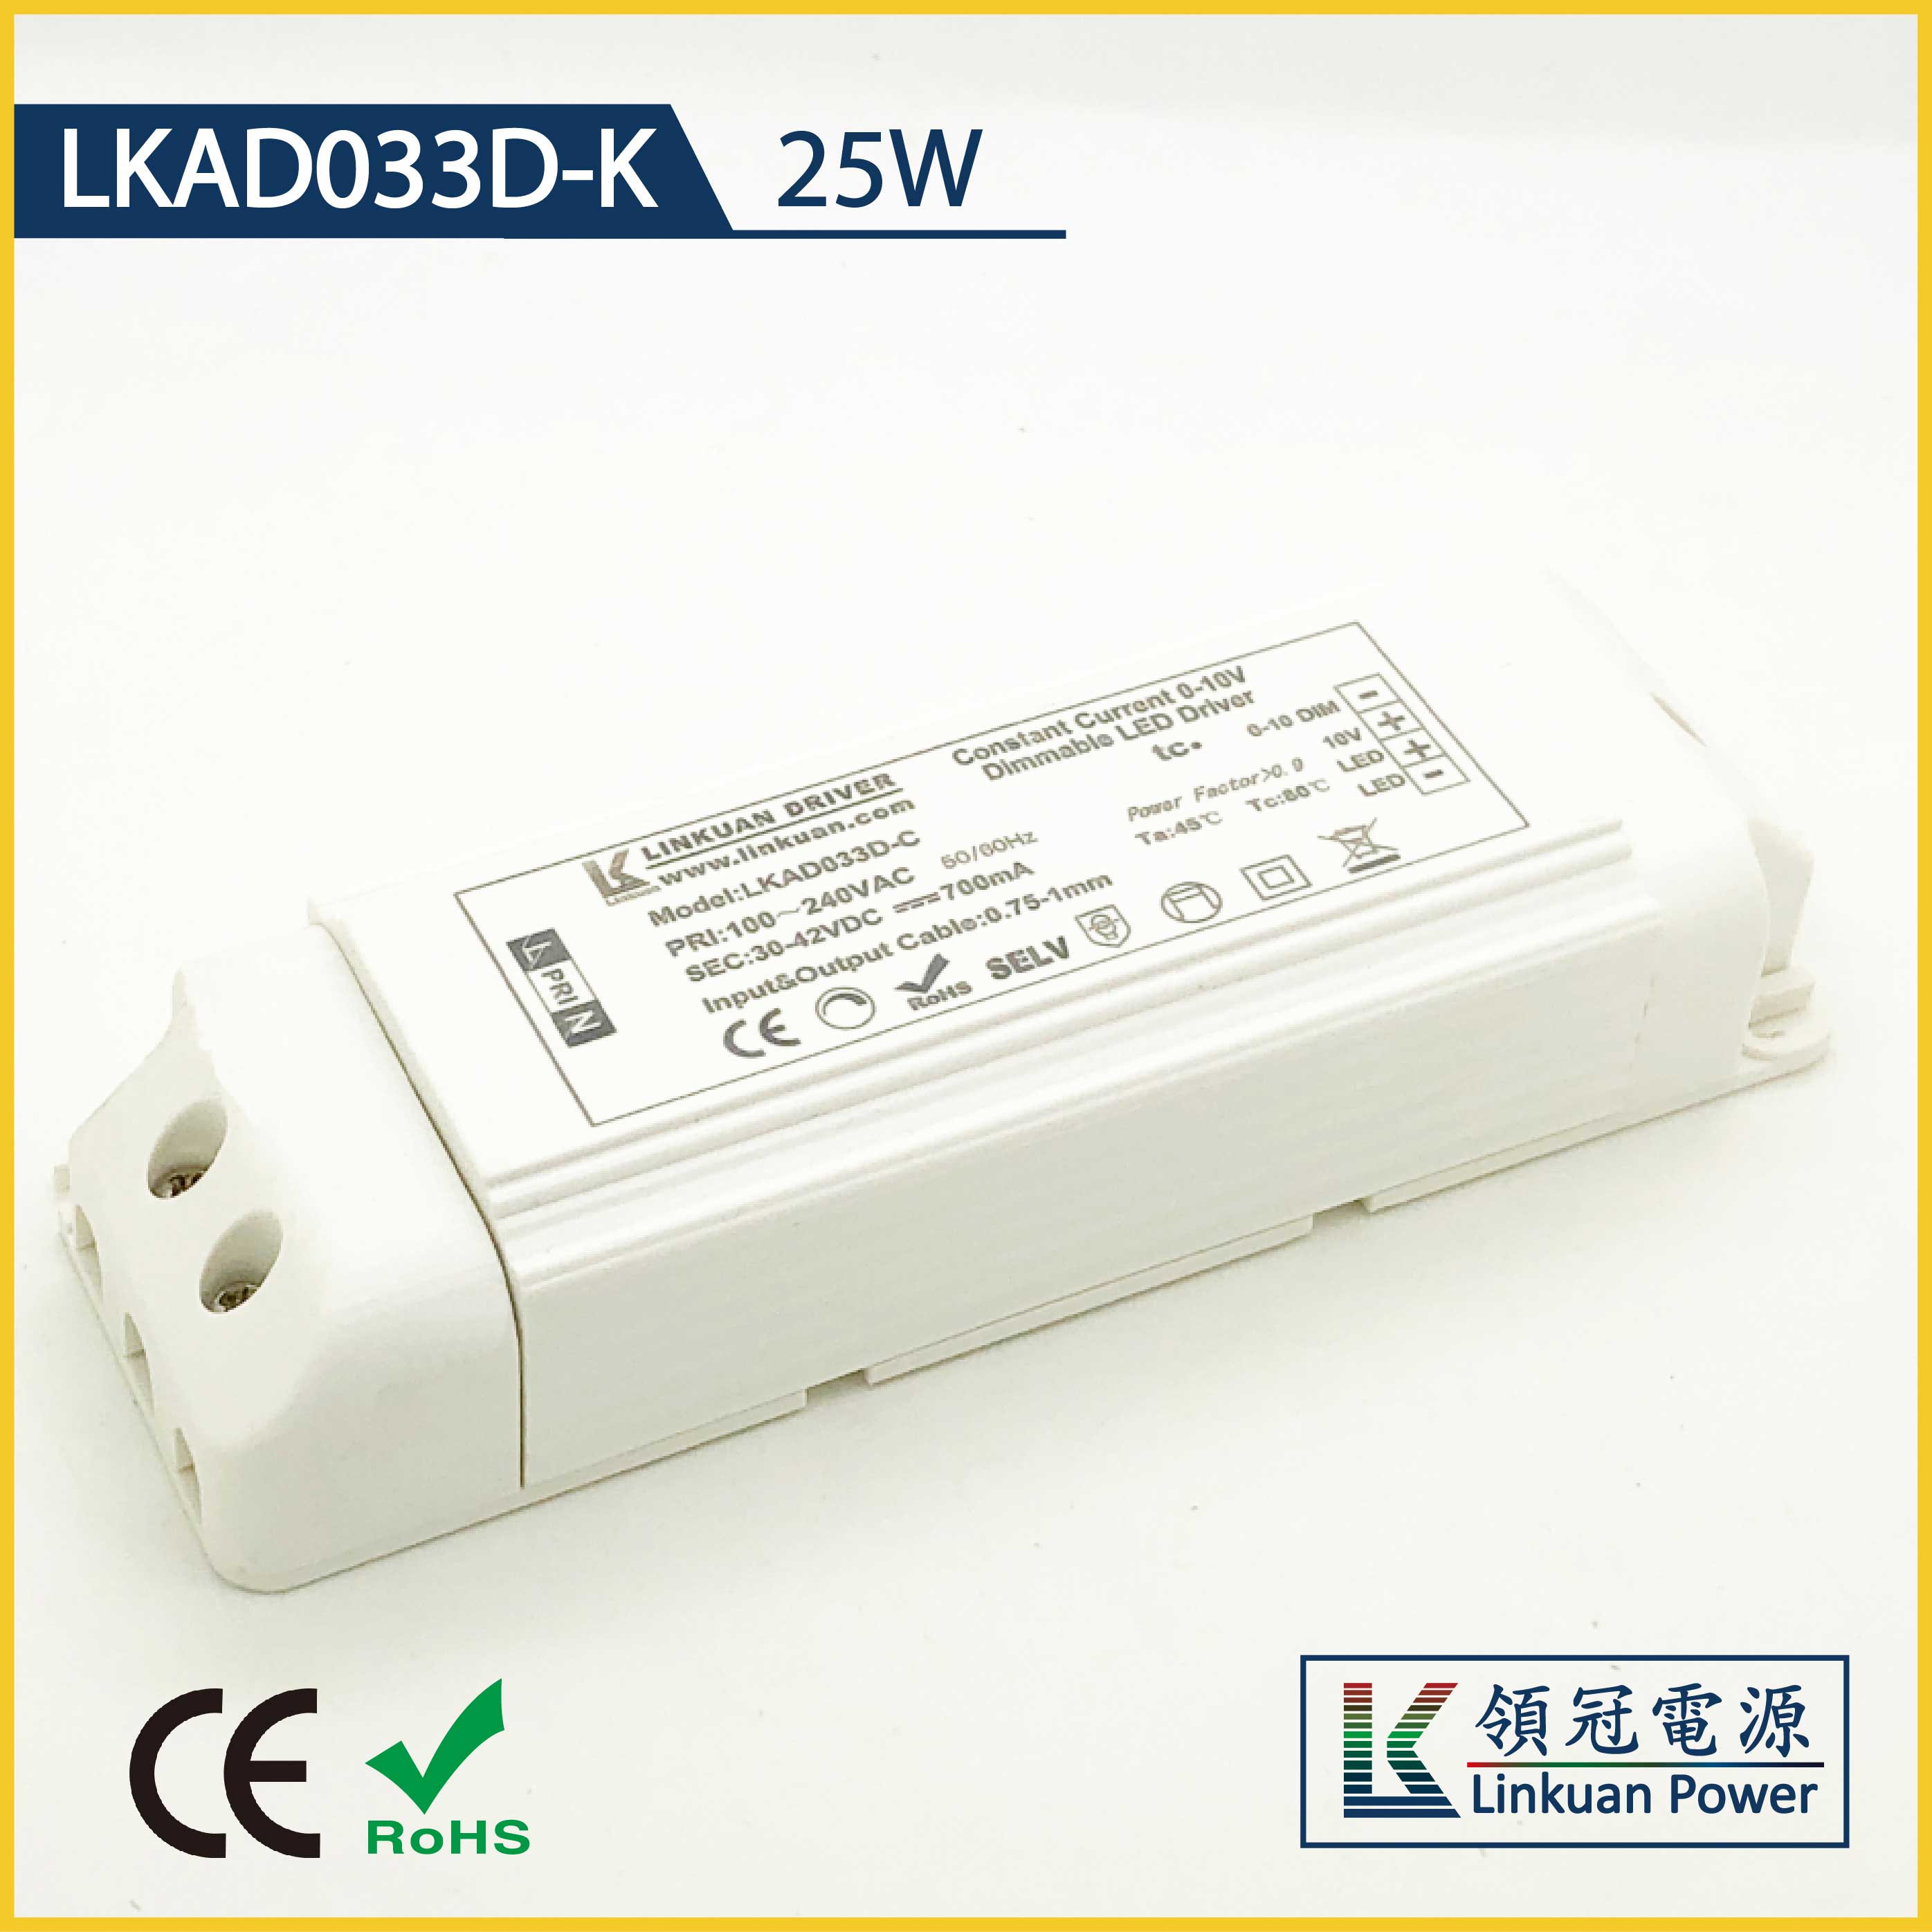 LKAD033D-K 25W 10-42V 600mA DALI CCT Adjustinig LED drivers